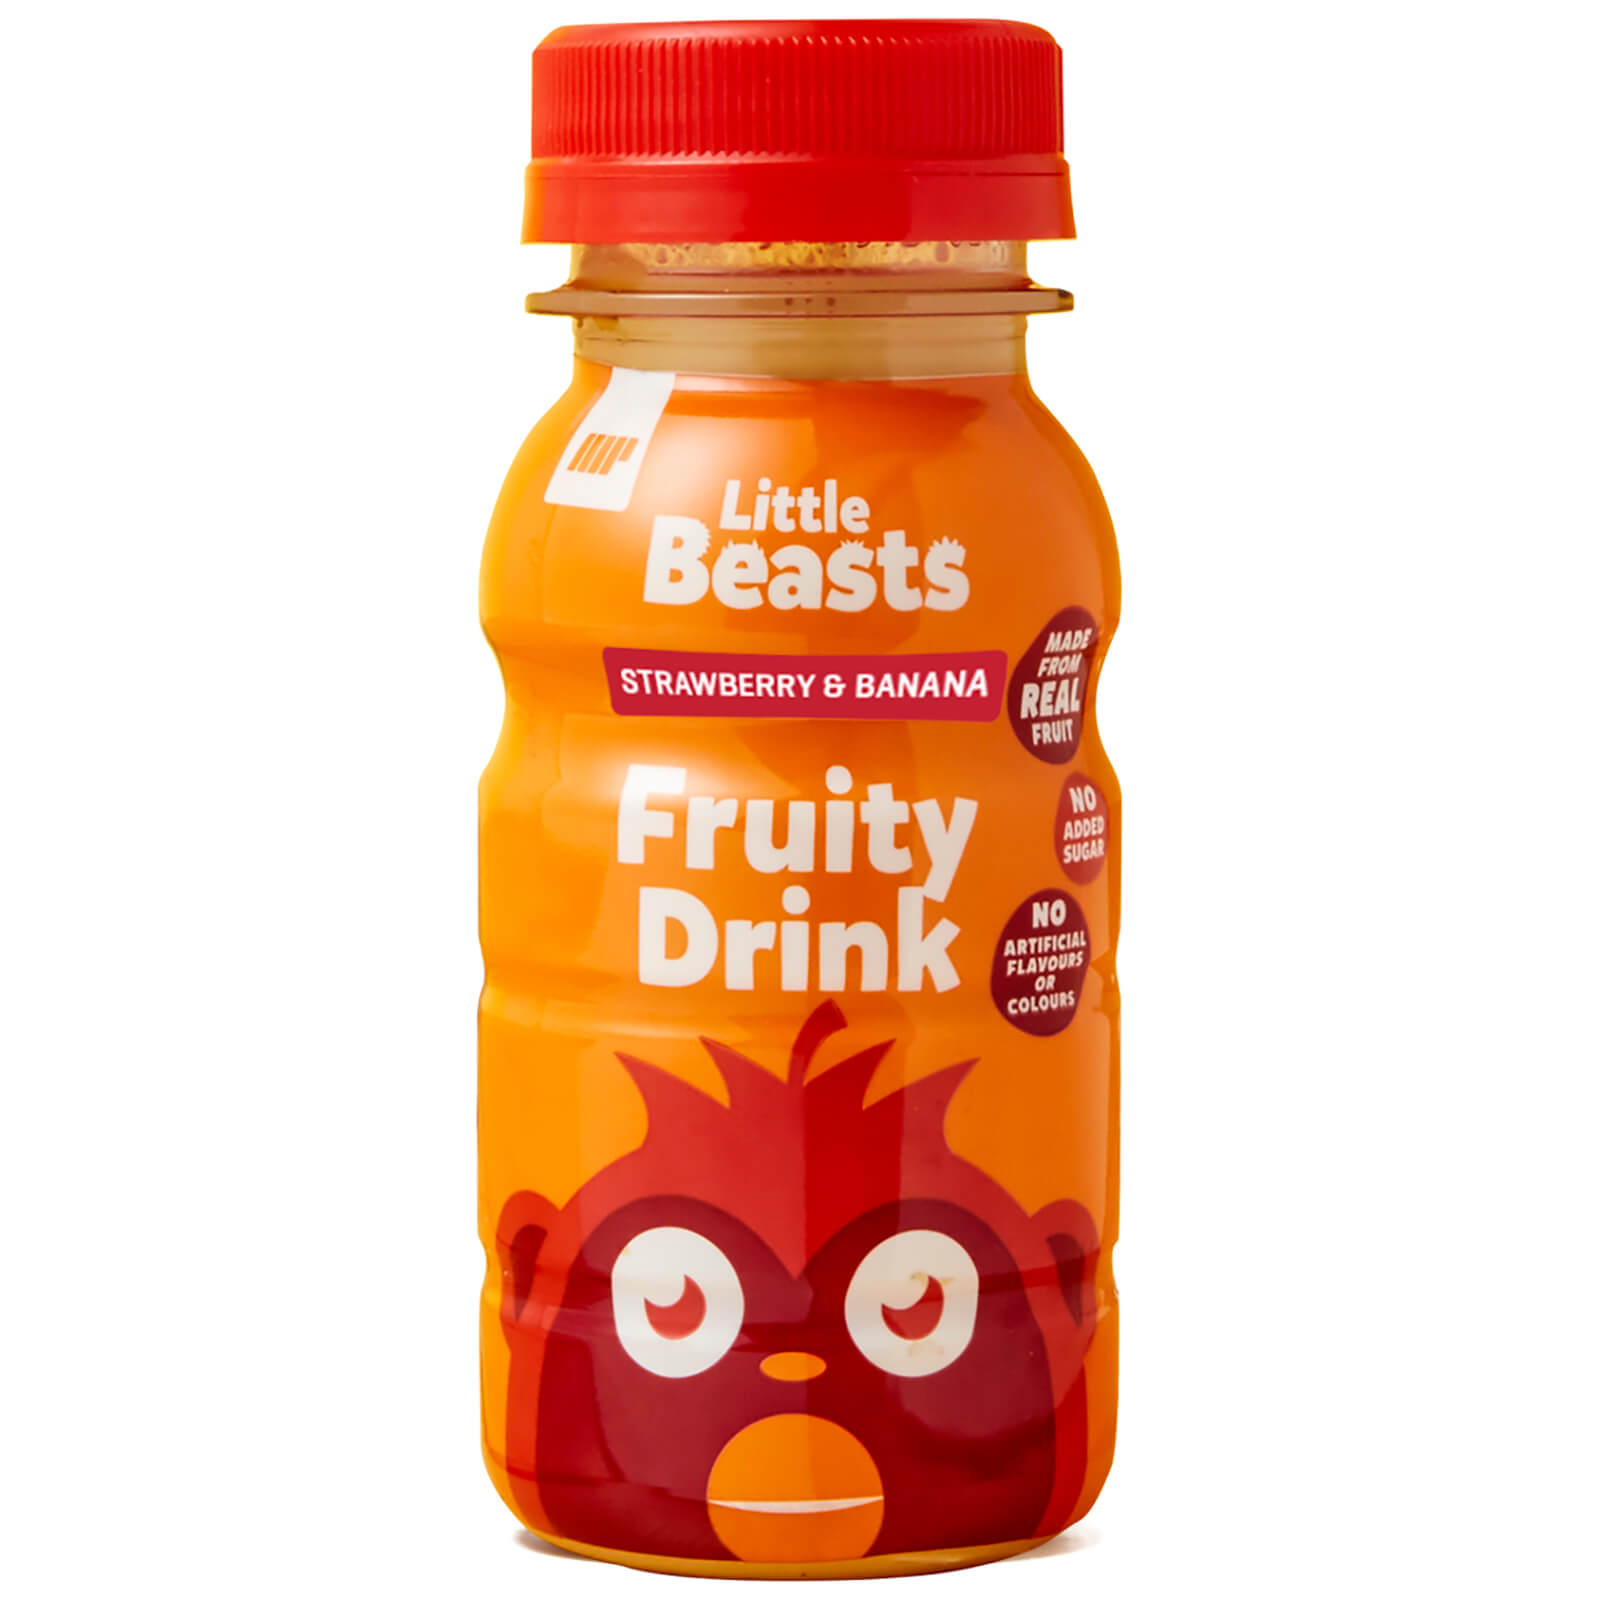 Little Beasts Fruity Drink - Moctpa